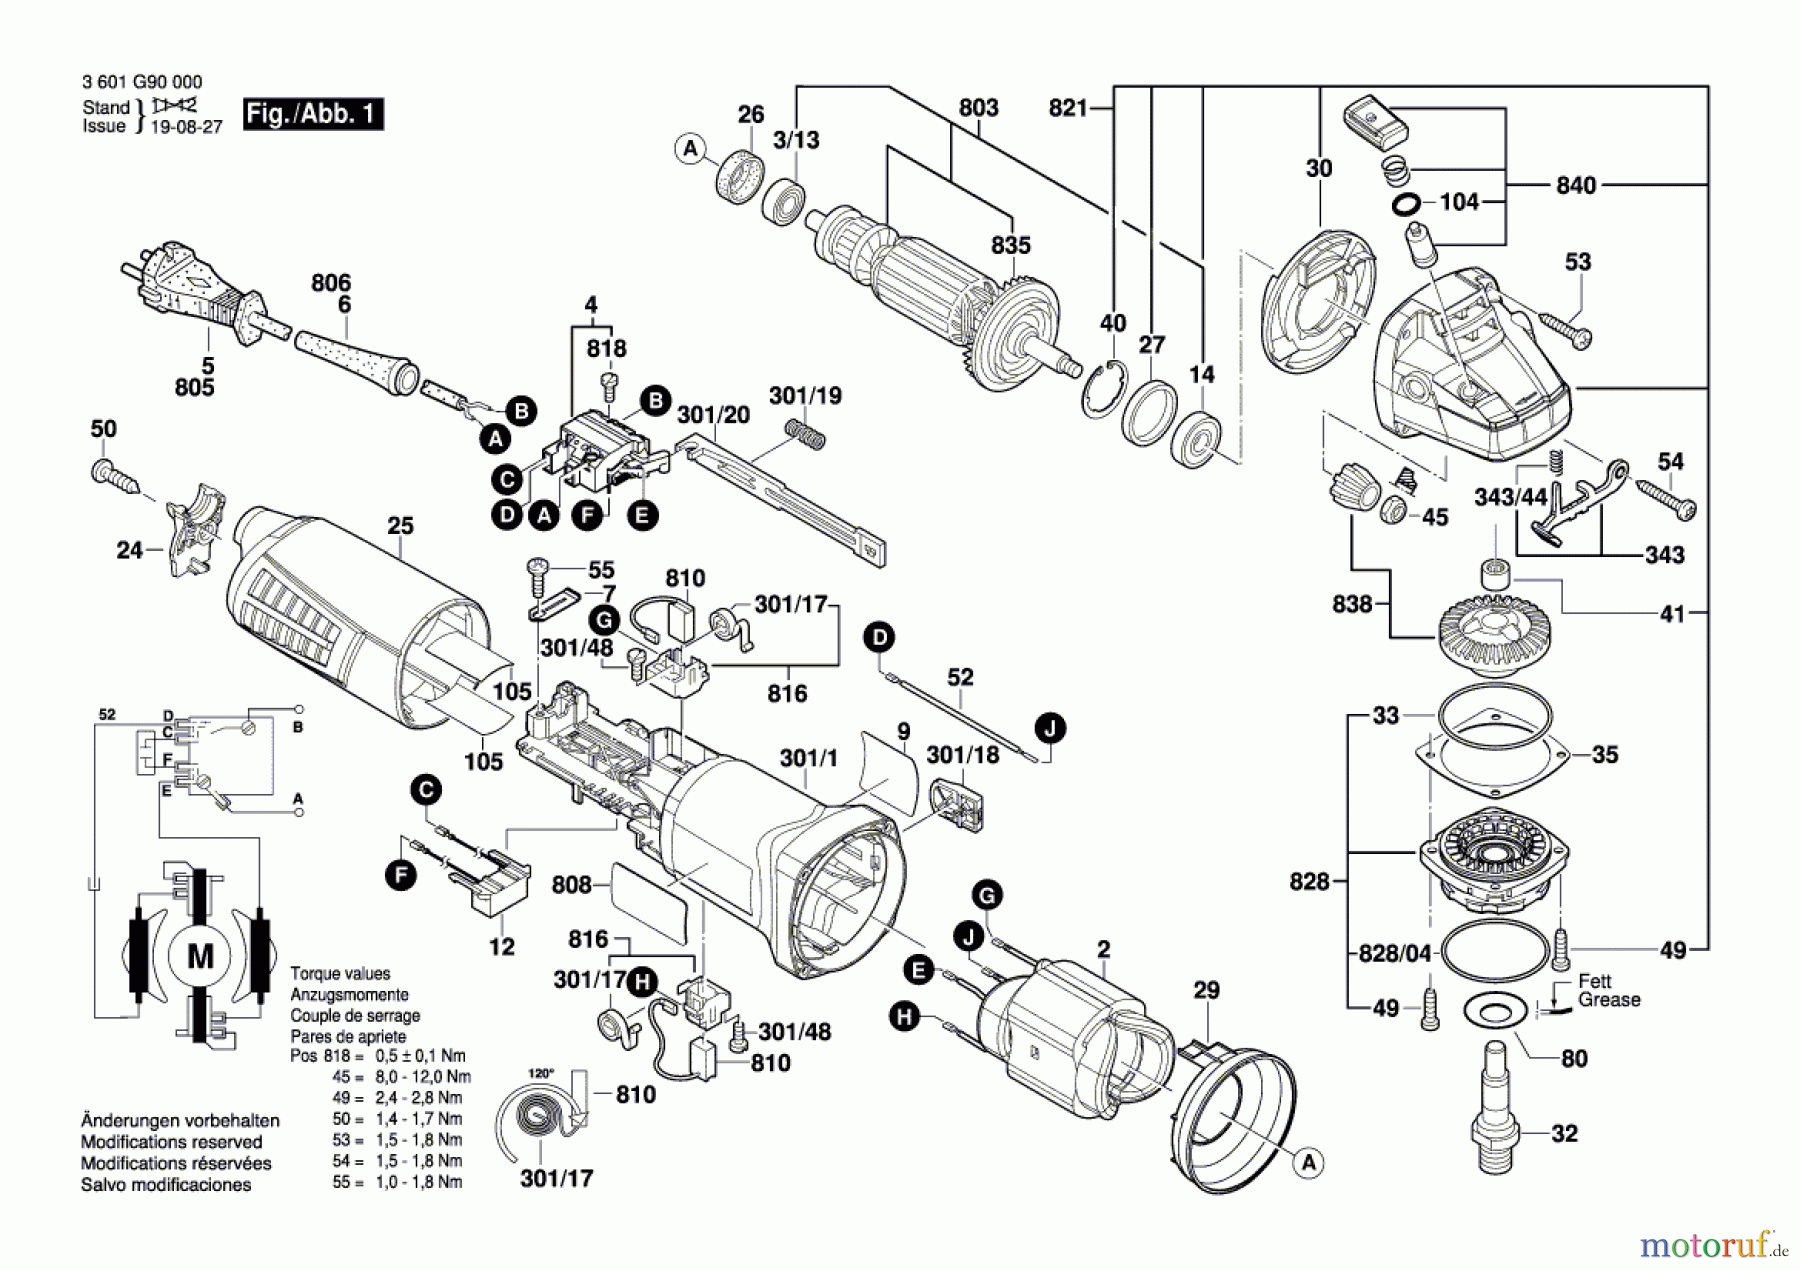  Bosch Werkzeug Winkelschleifer GWS 9-125 Seite 1